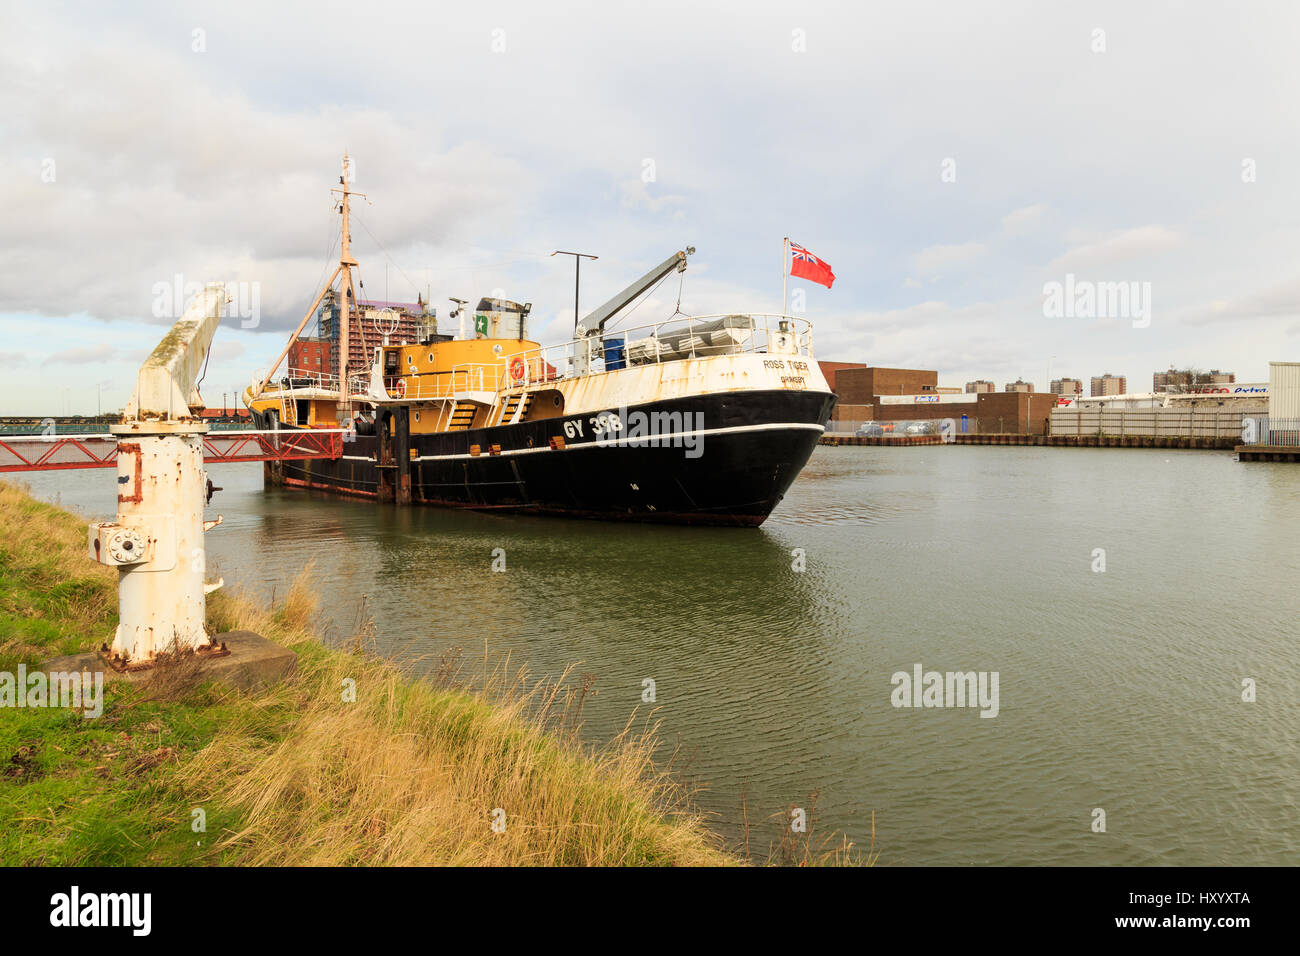 En Grimsby, Inglaterra - 14 de marzo: el 'tigre' Ross lateral tradicional winder pesca buque arrastrero, convertida en museo barco. Alexandra dock. En Grimsby, no Foto de stock